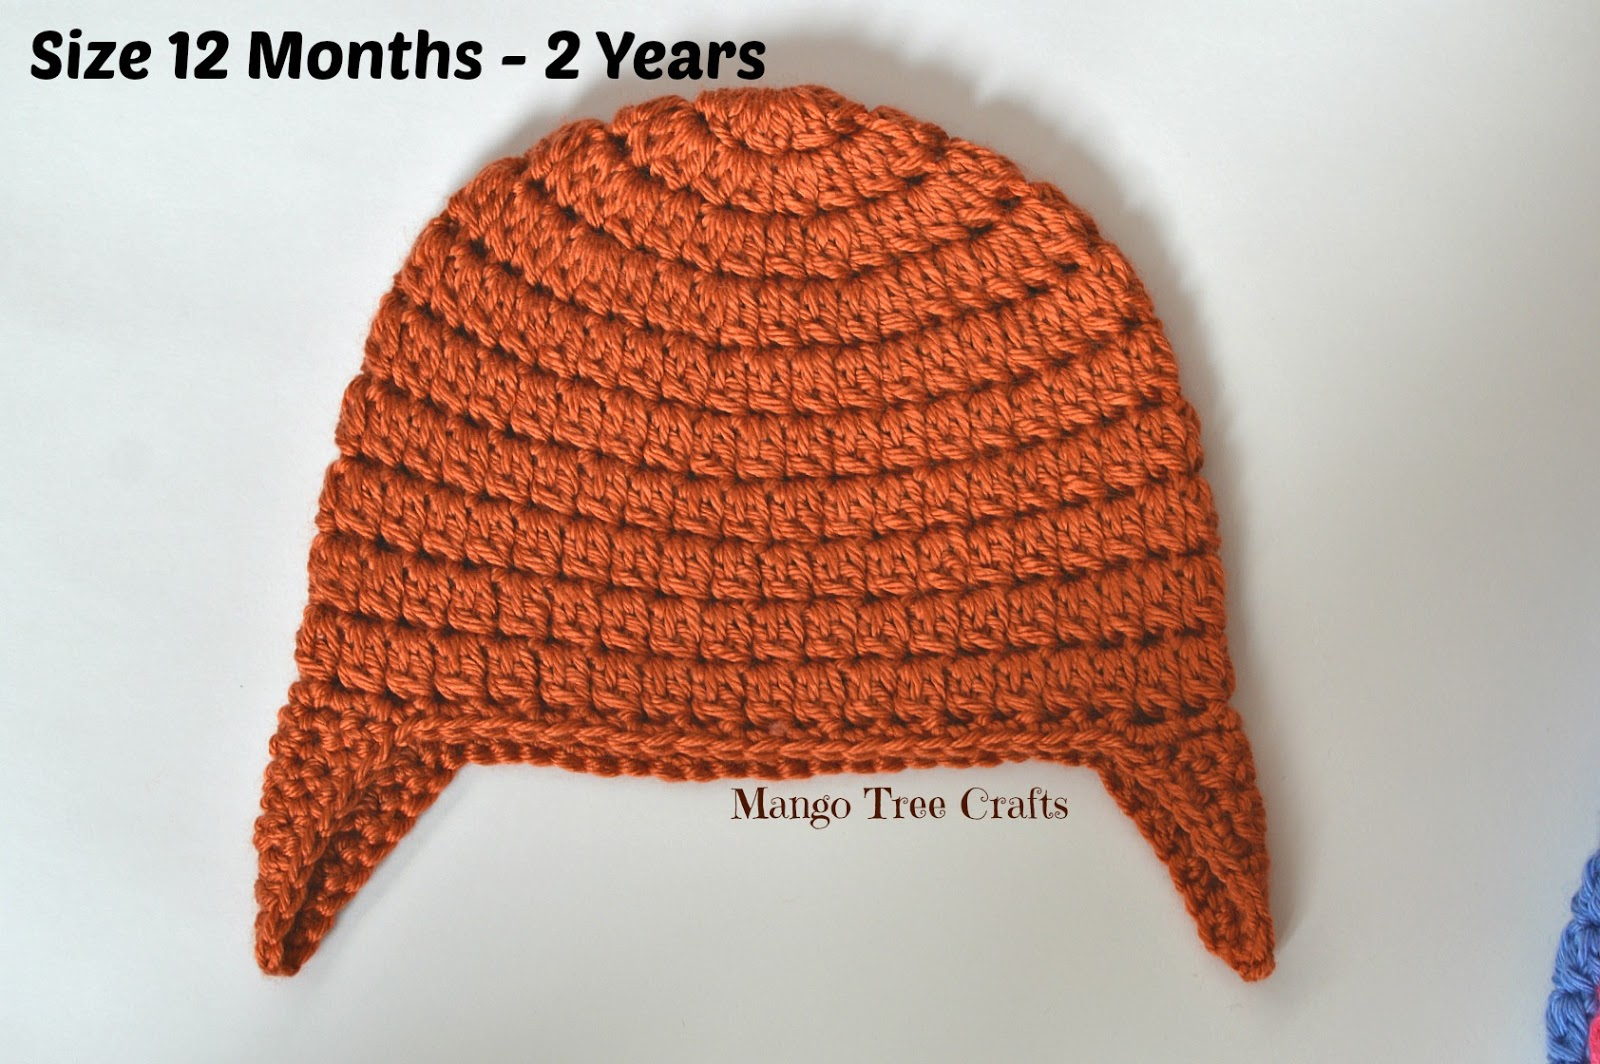 Single Crochet Earflap Hat Pattern Basic Crochet Ear Flap Hat Pattern In 7 Sizes